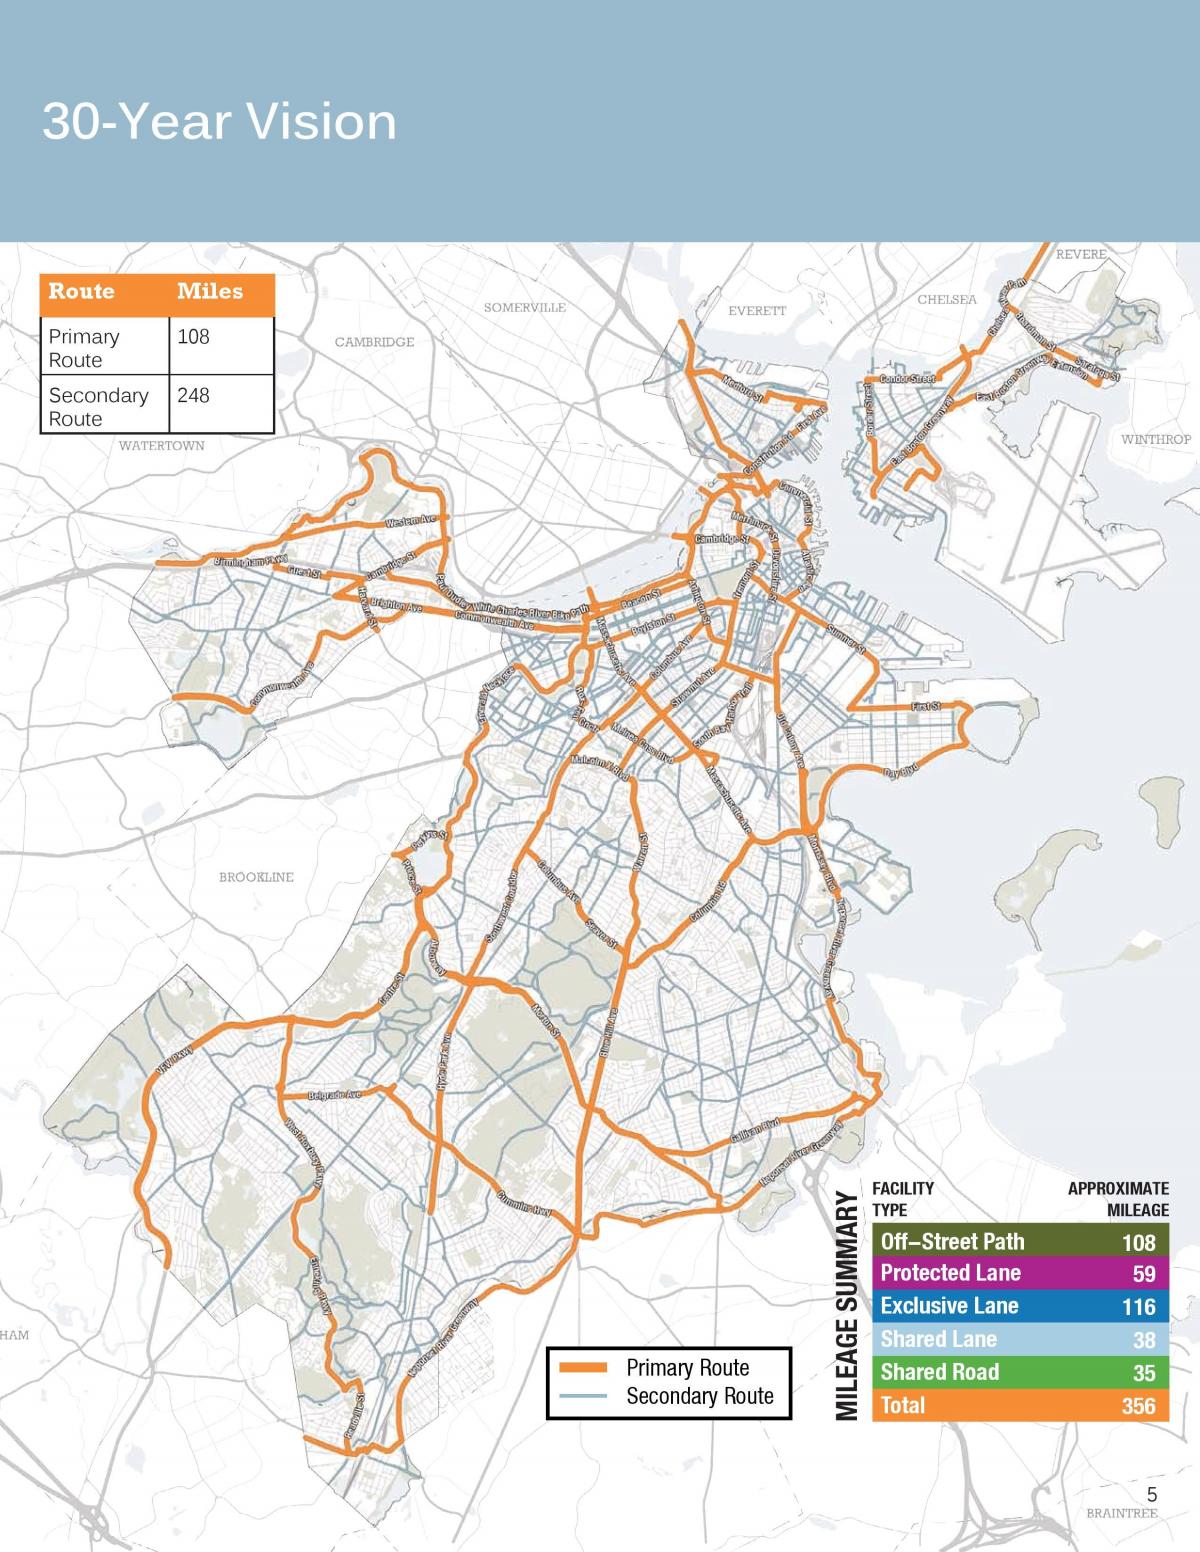 Mapa ścieżek rowerowych w Bostonie